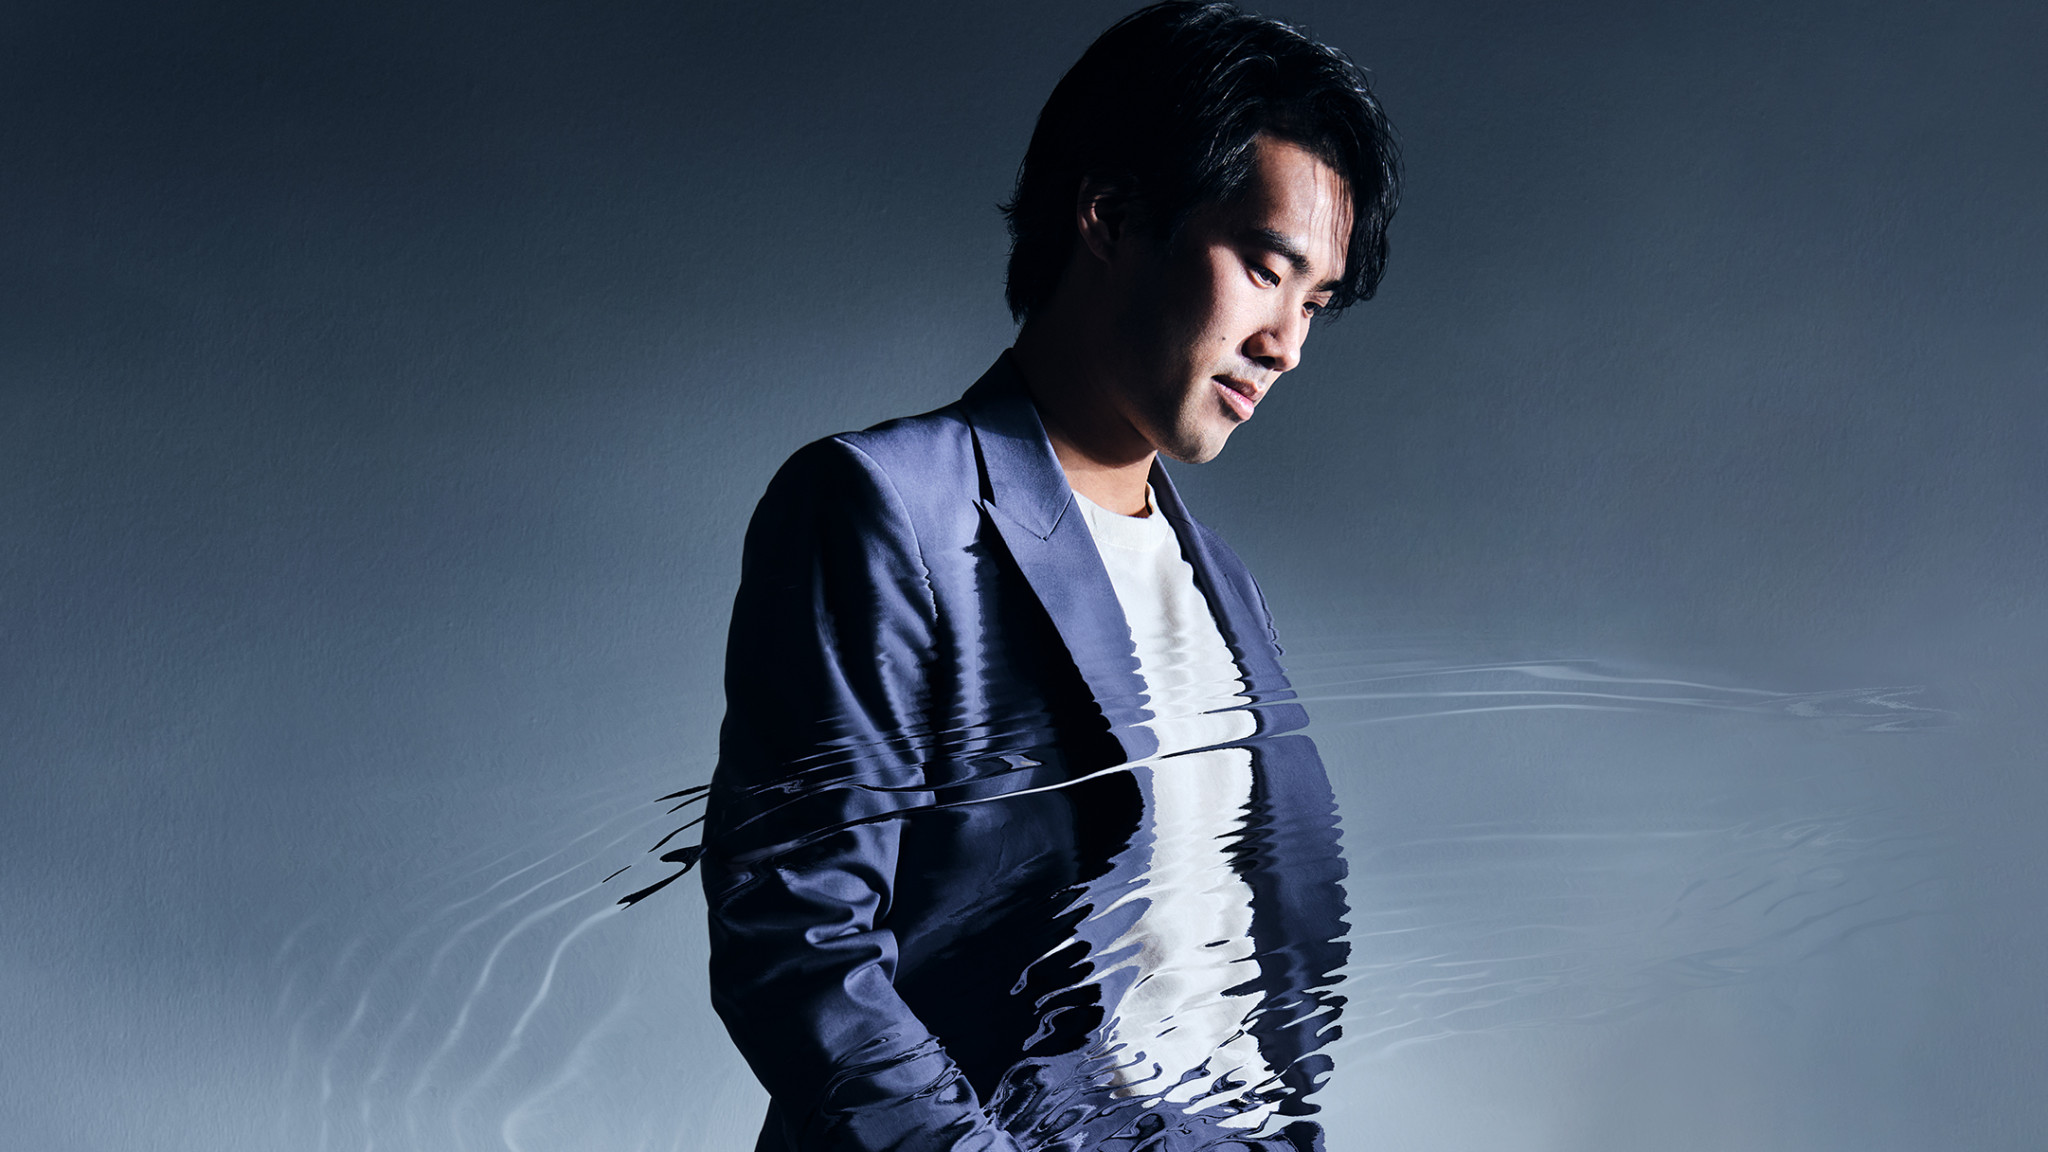 Bruce Liu Announces His Debut Studio Album